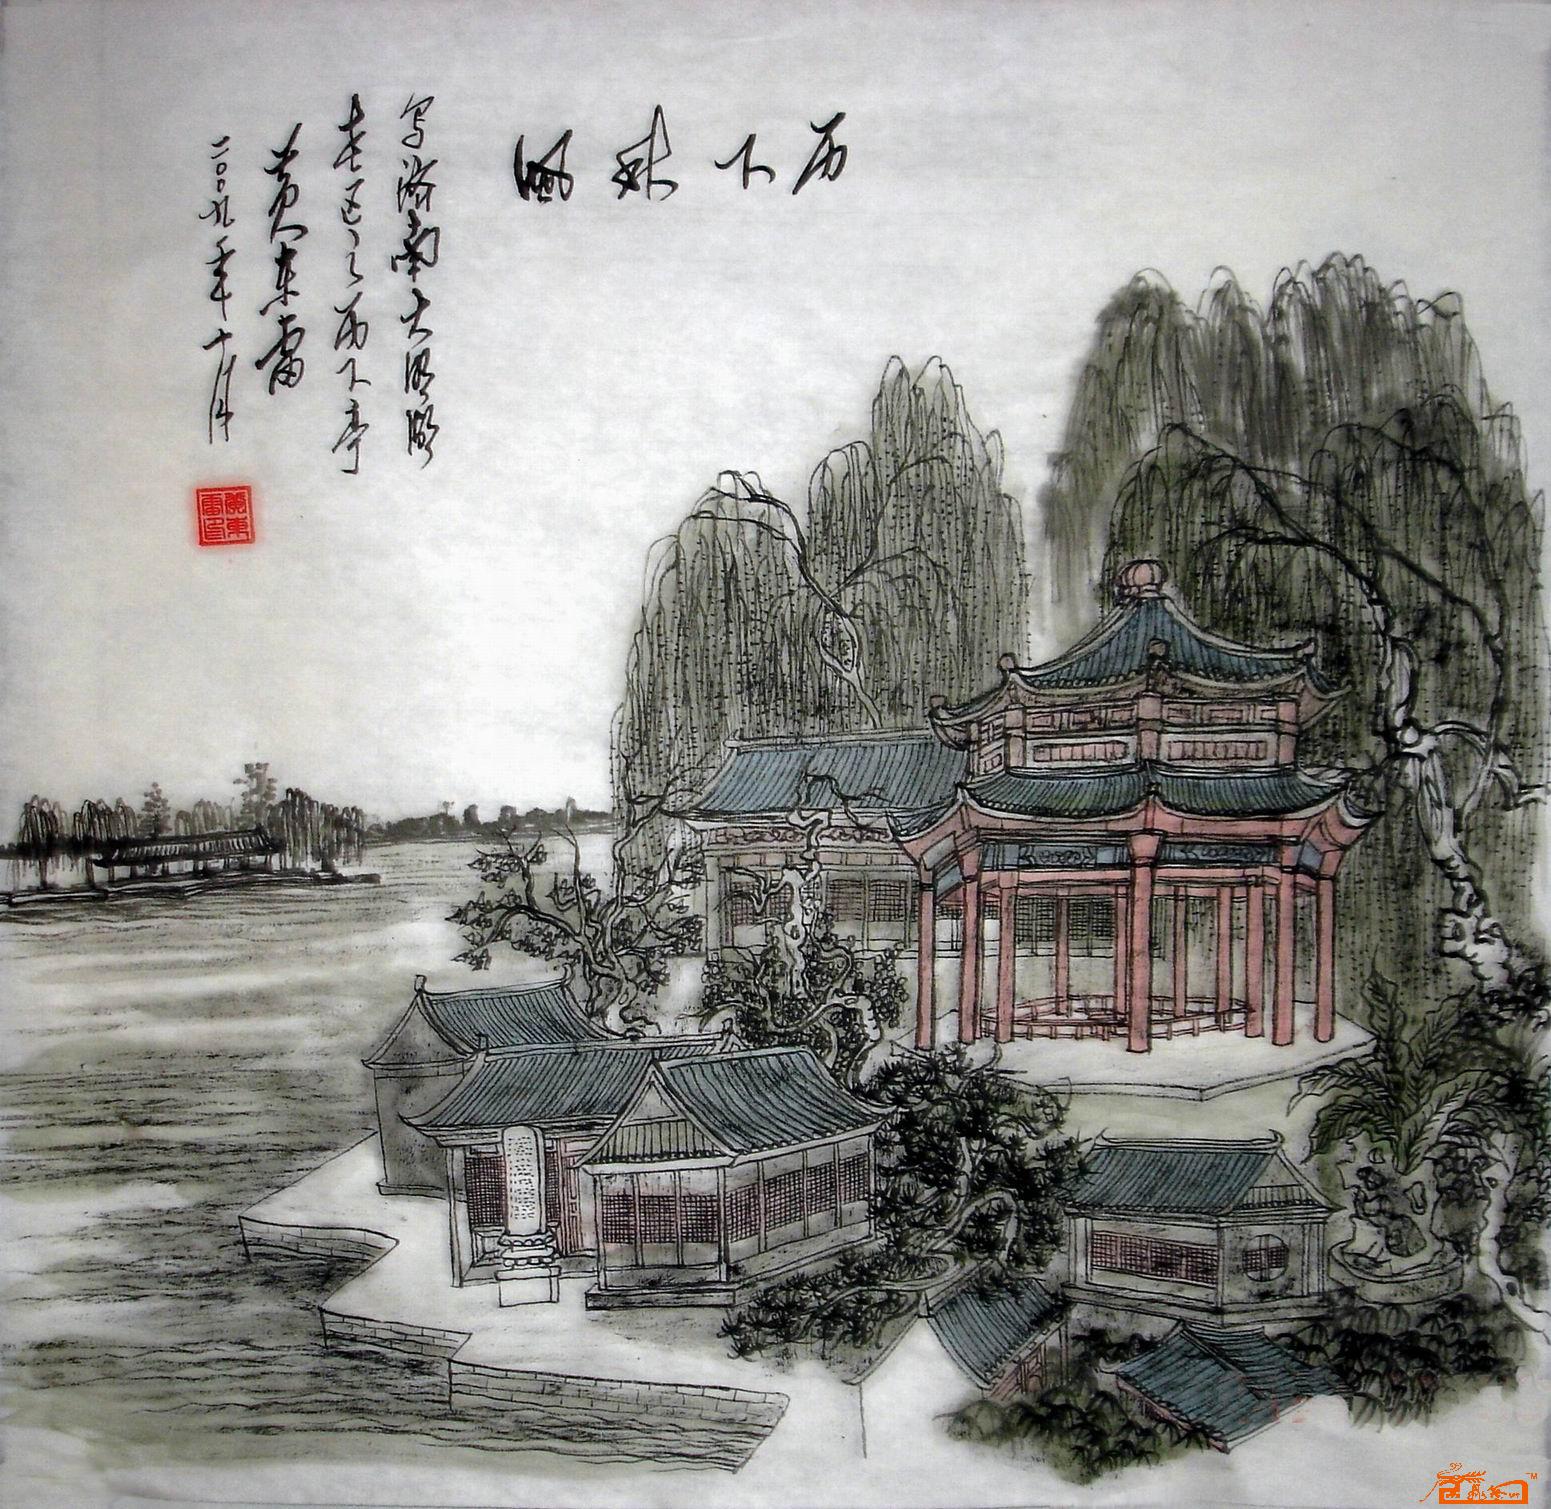 名家 黄东雷(古画王子) 山水 - 济南大明湖系列国画